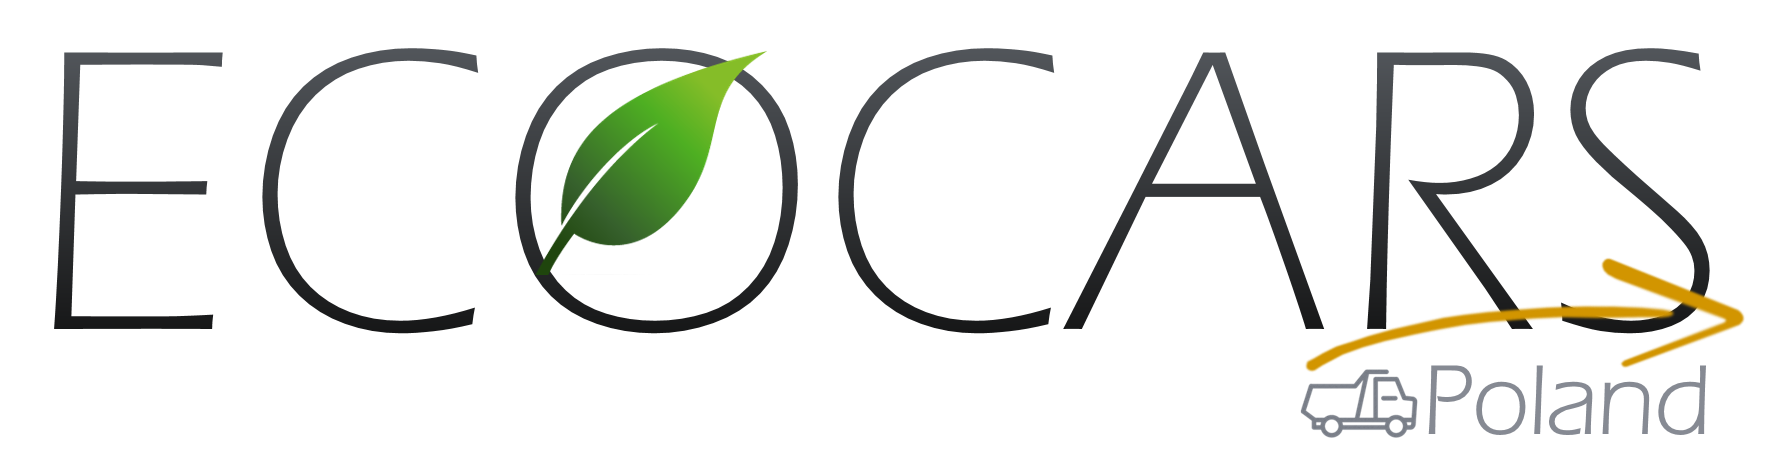 cropped logotyp Ecocars Poland - Uchwyt/klapa listwy ssawy CC2020/CC2000